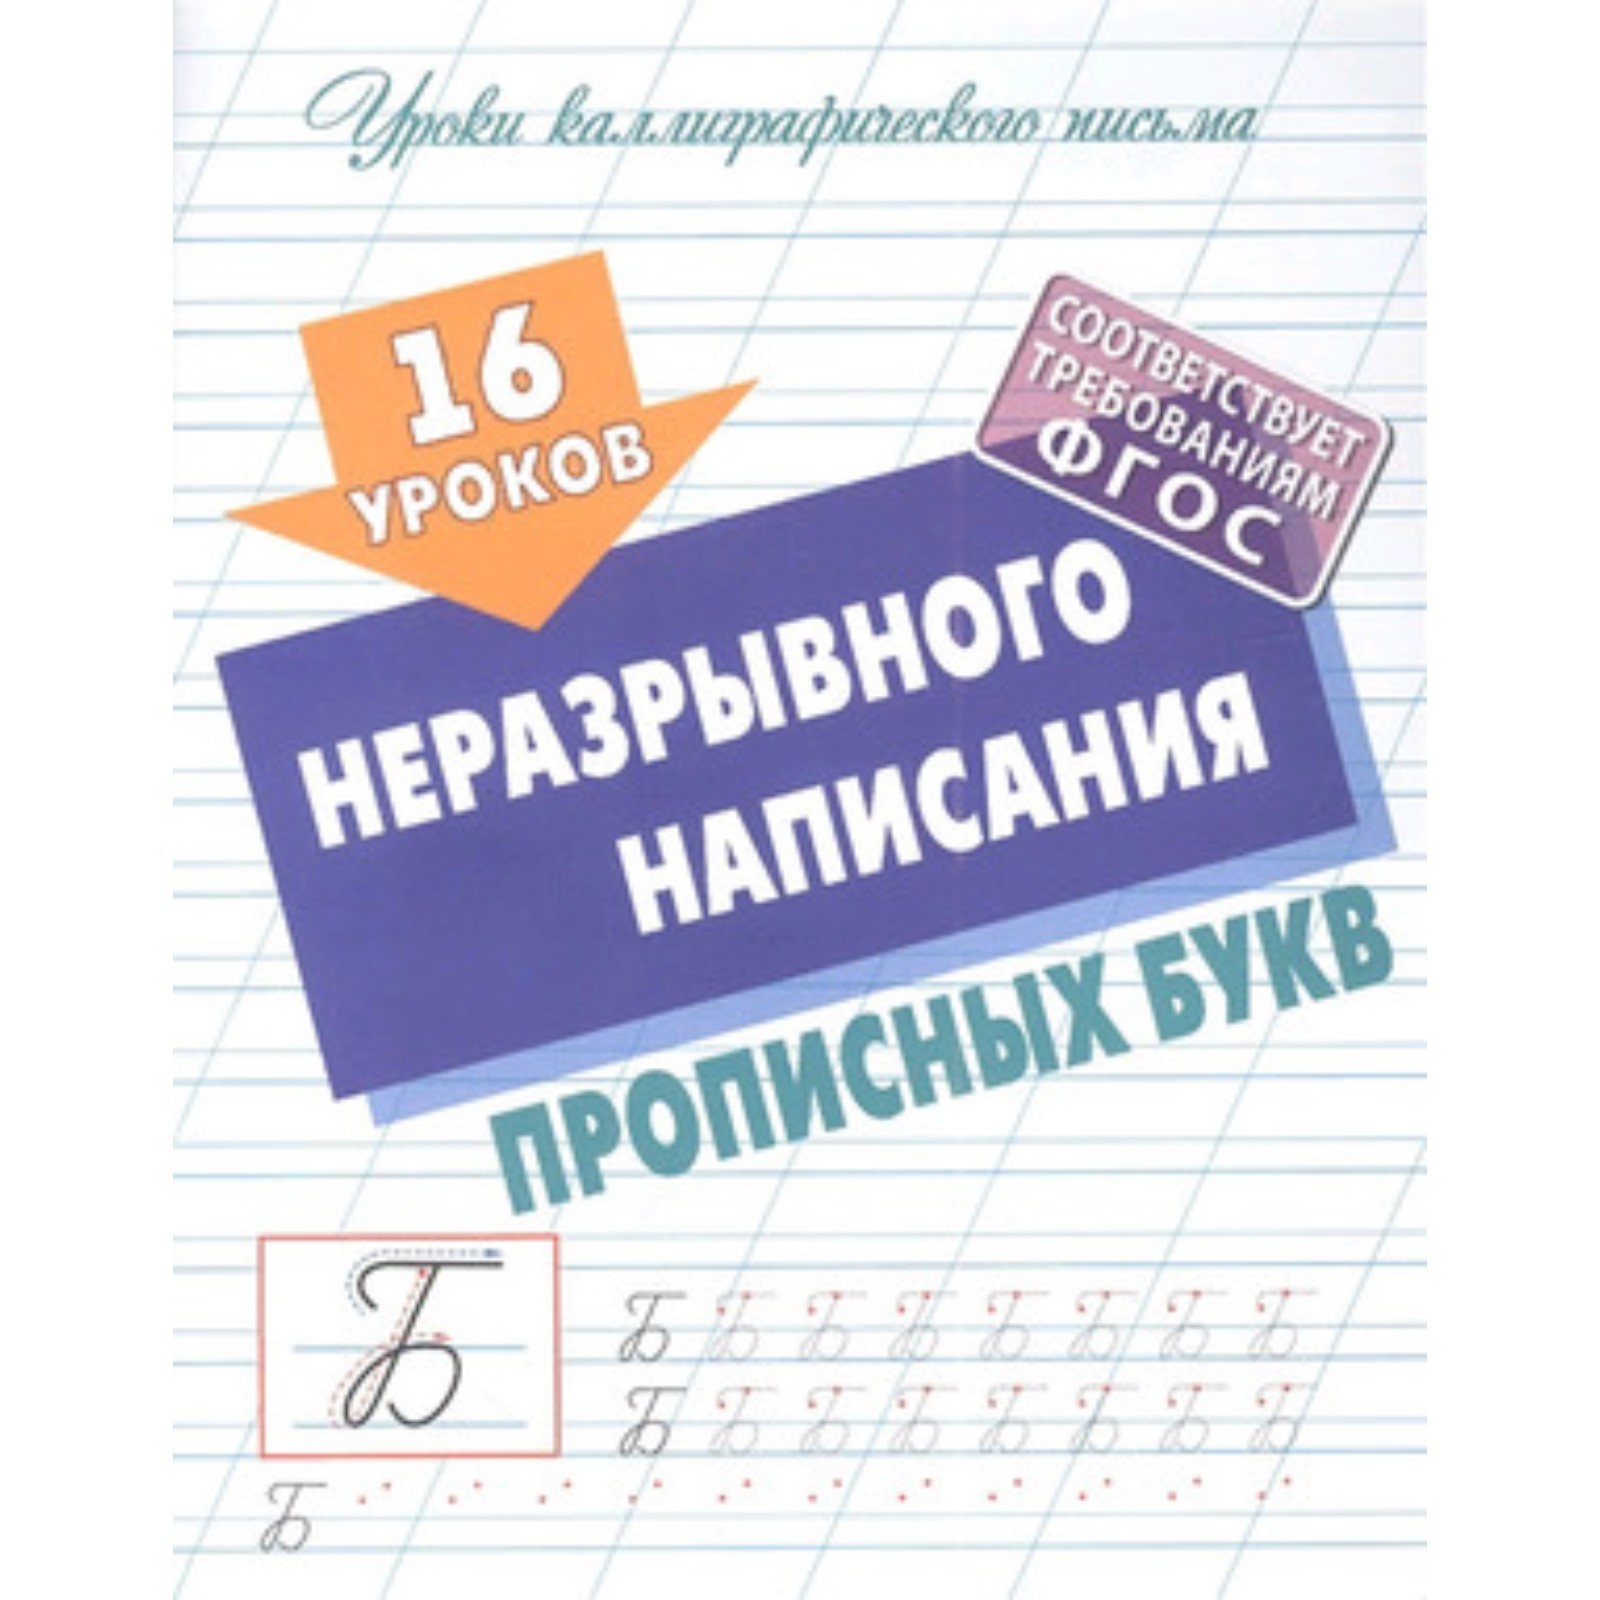 16 уроков неразрывного написания прописных букв Уроки каллиграфического письма С.В.Петренко 